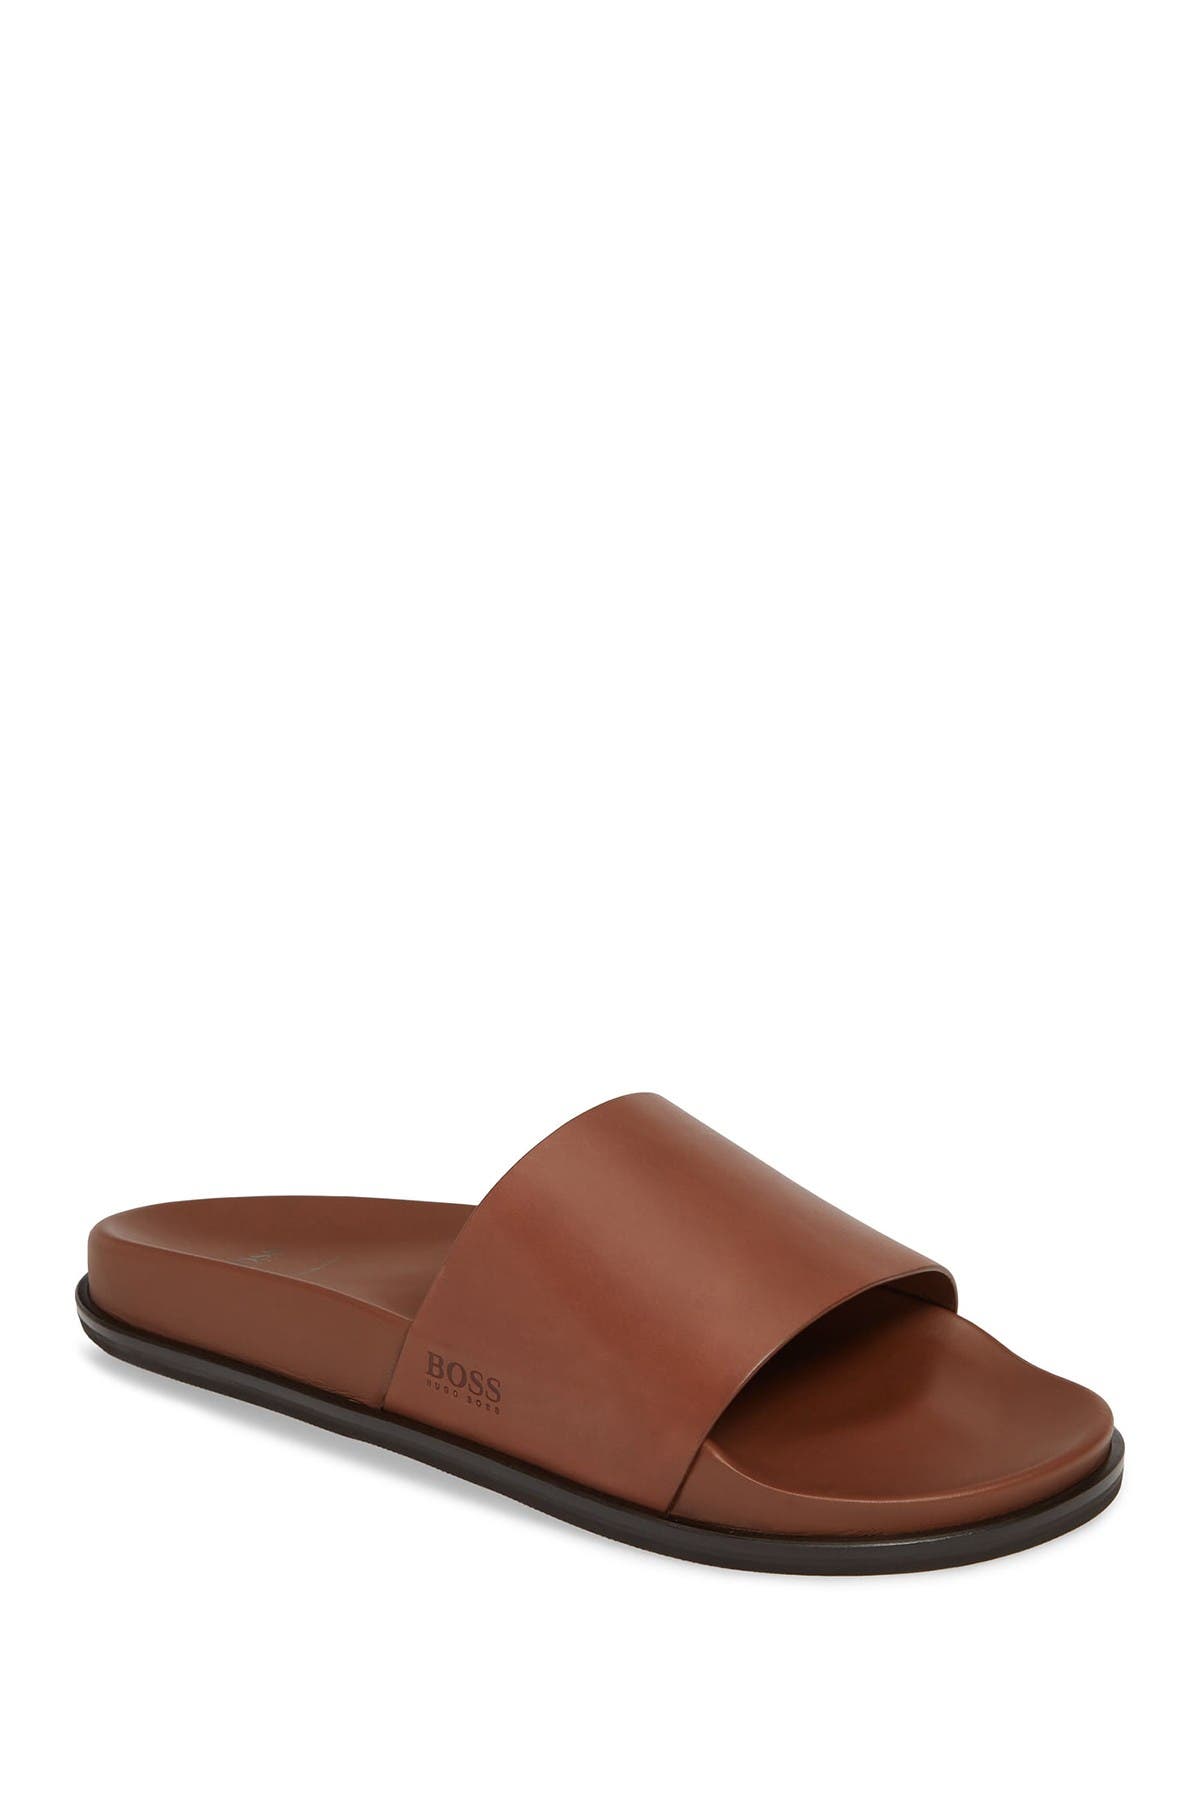 BOSS | Cliff Leather Slide Sandal 